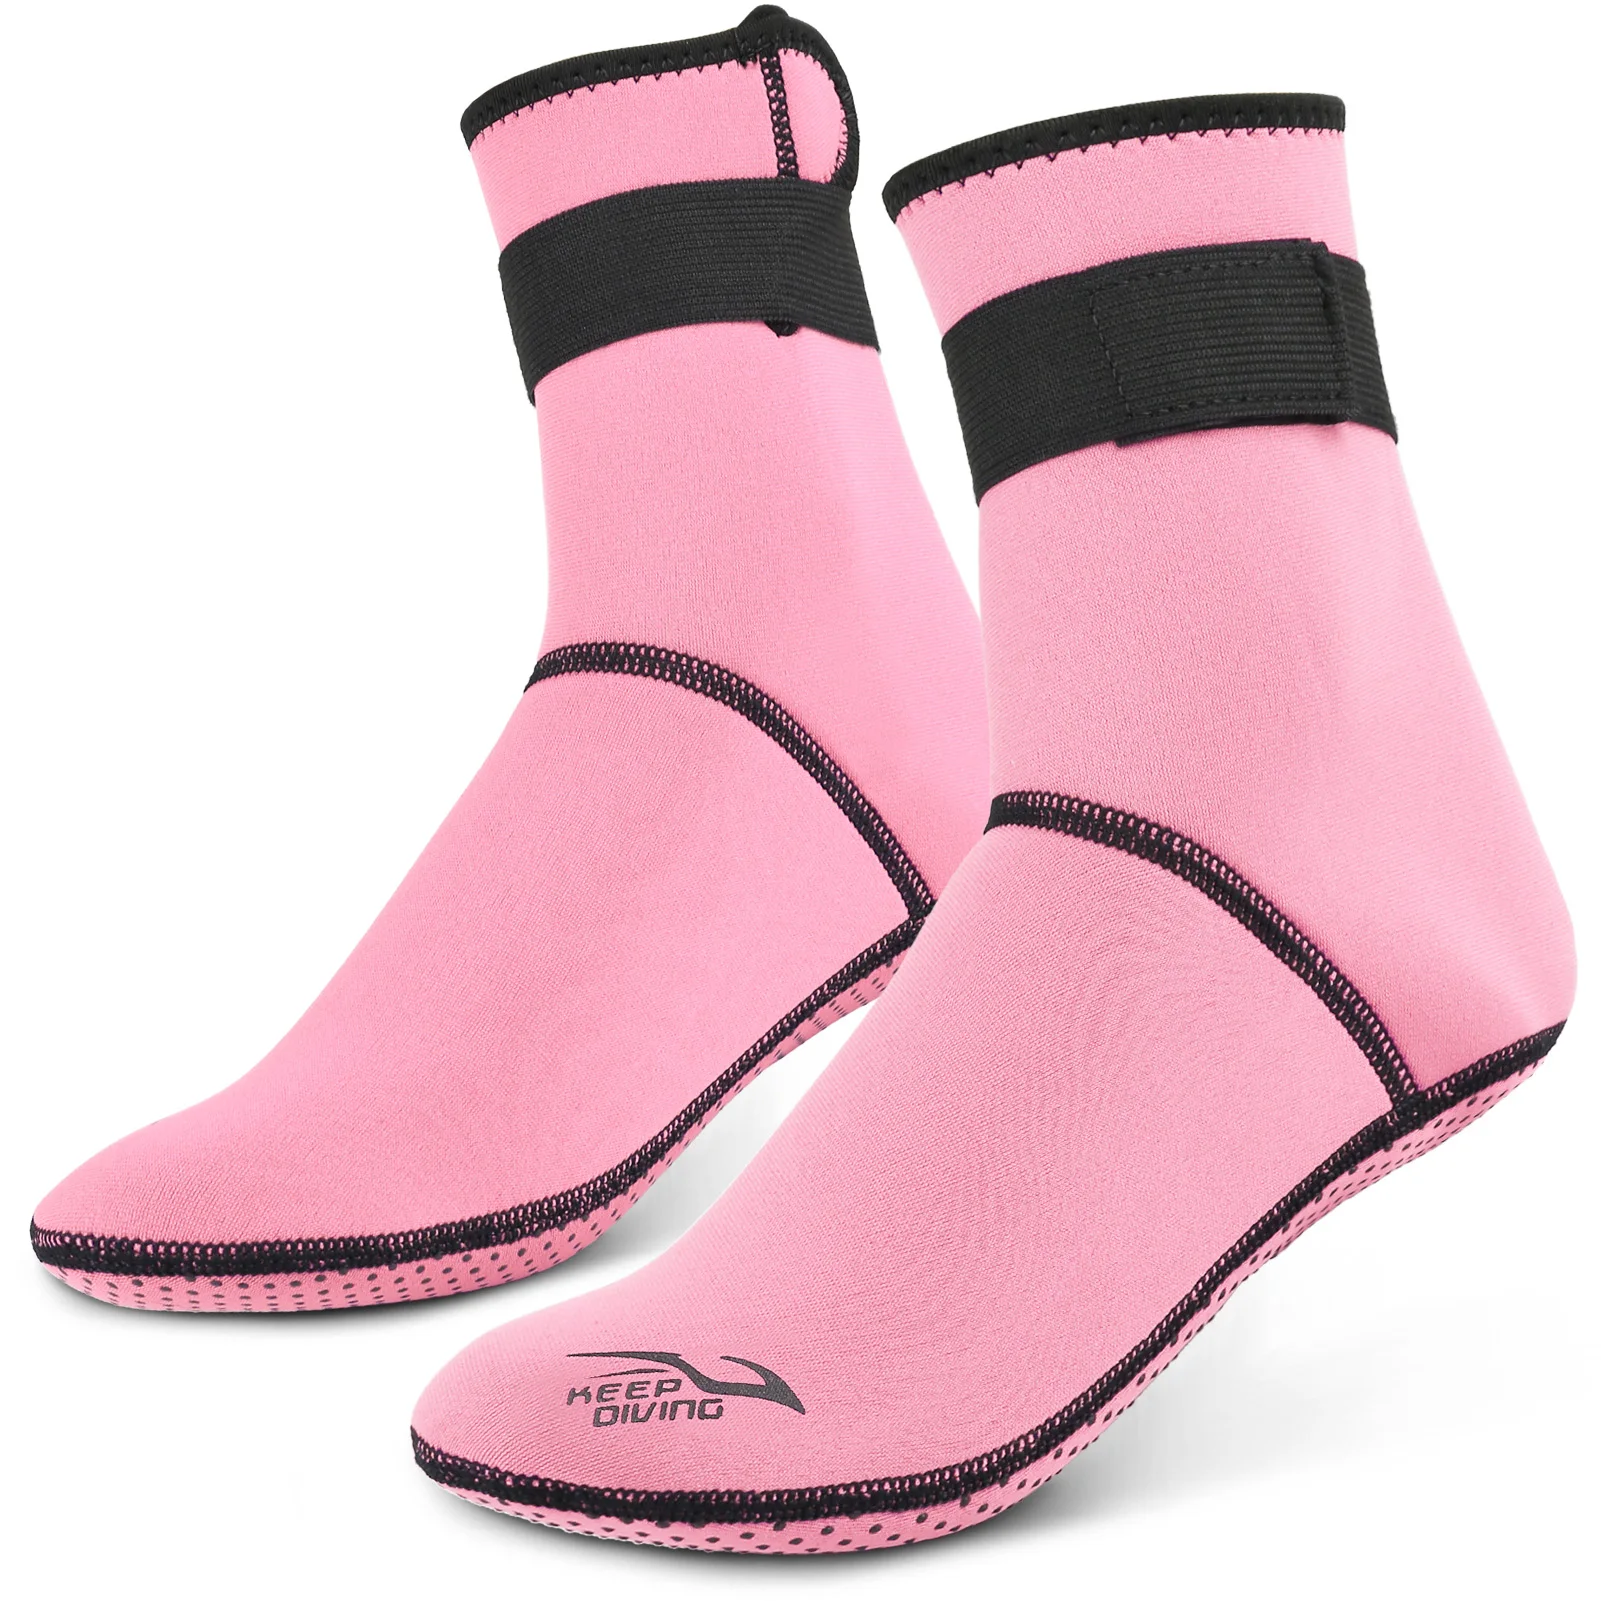 Tauchen Socken 3mm Neopren Strand Wasser Socken Thermische Neoprenanzug Stiefel Anti Slip Tauchen Socken für Rafting Schnorcheln Segeln Schwimmen